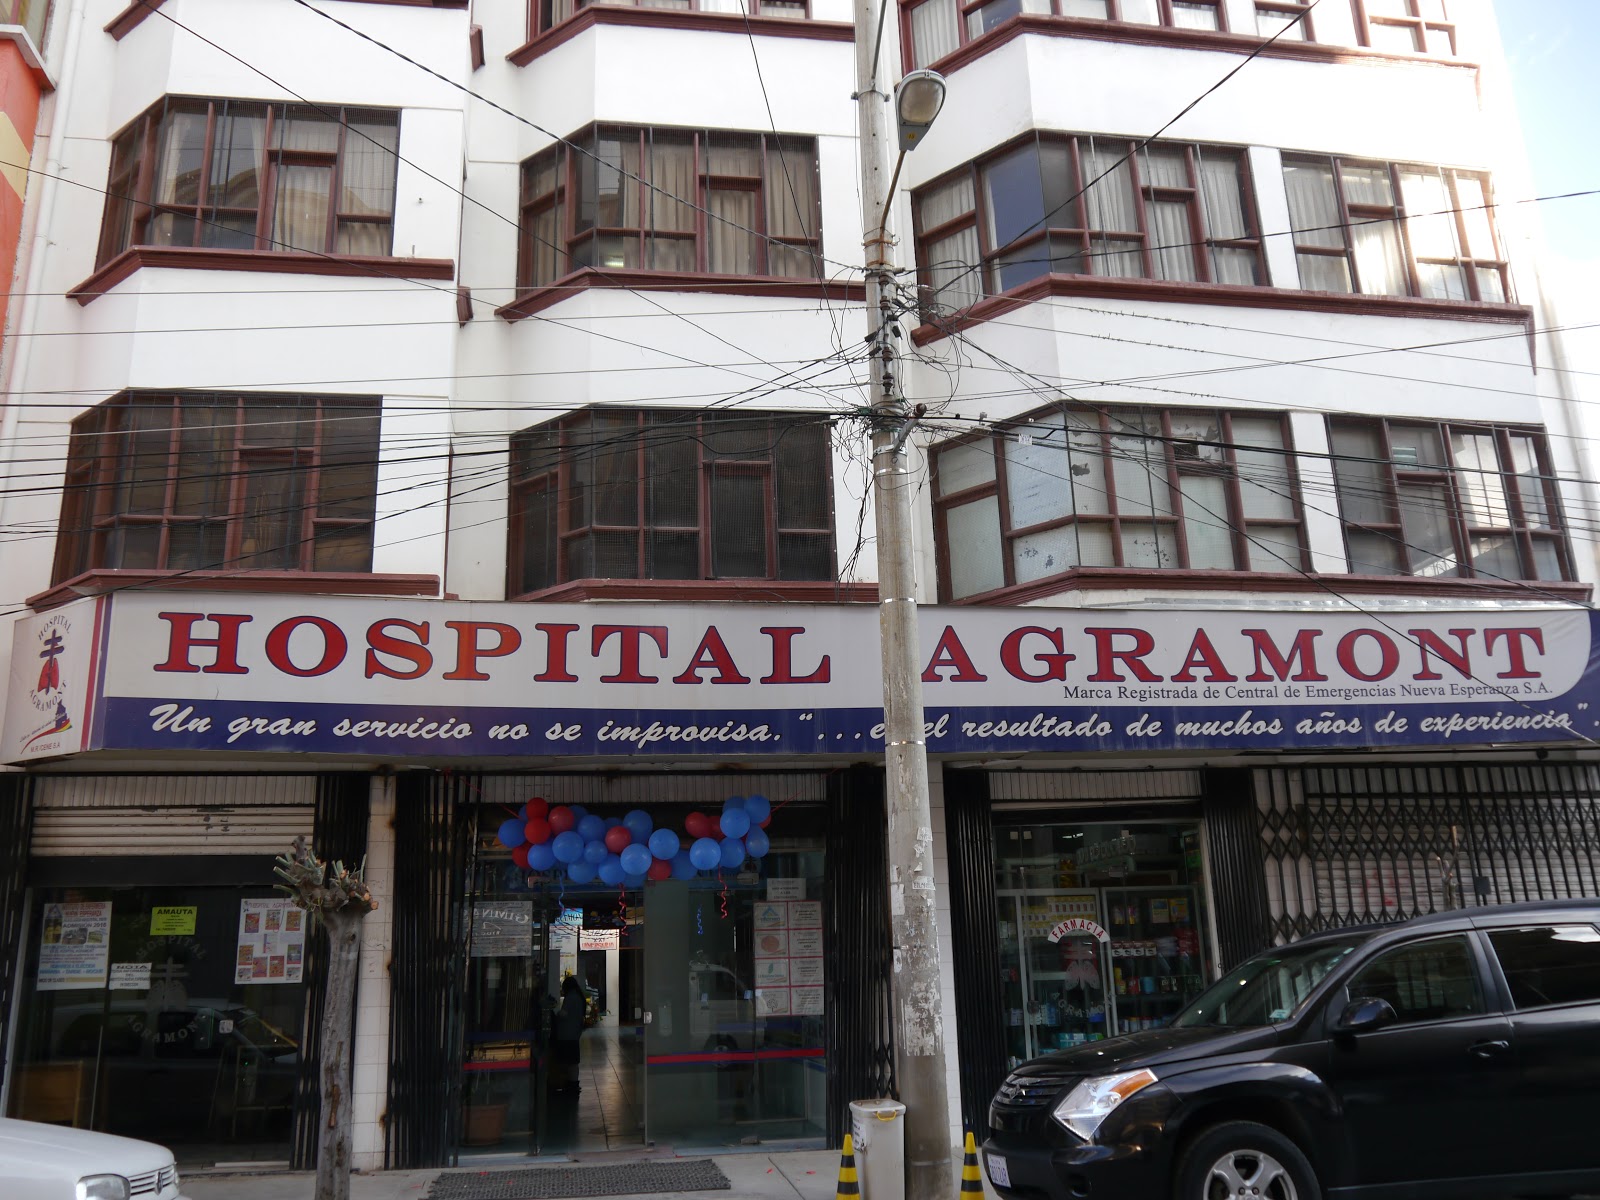 Hospital Agramont va a sus 25 años de servicio en la ciudad de El Alto / H. AGRAMONT